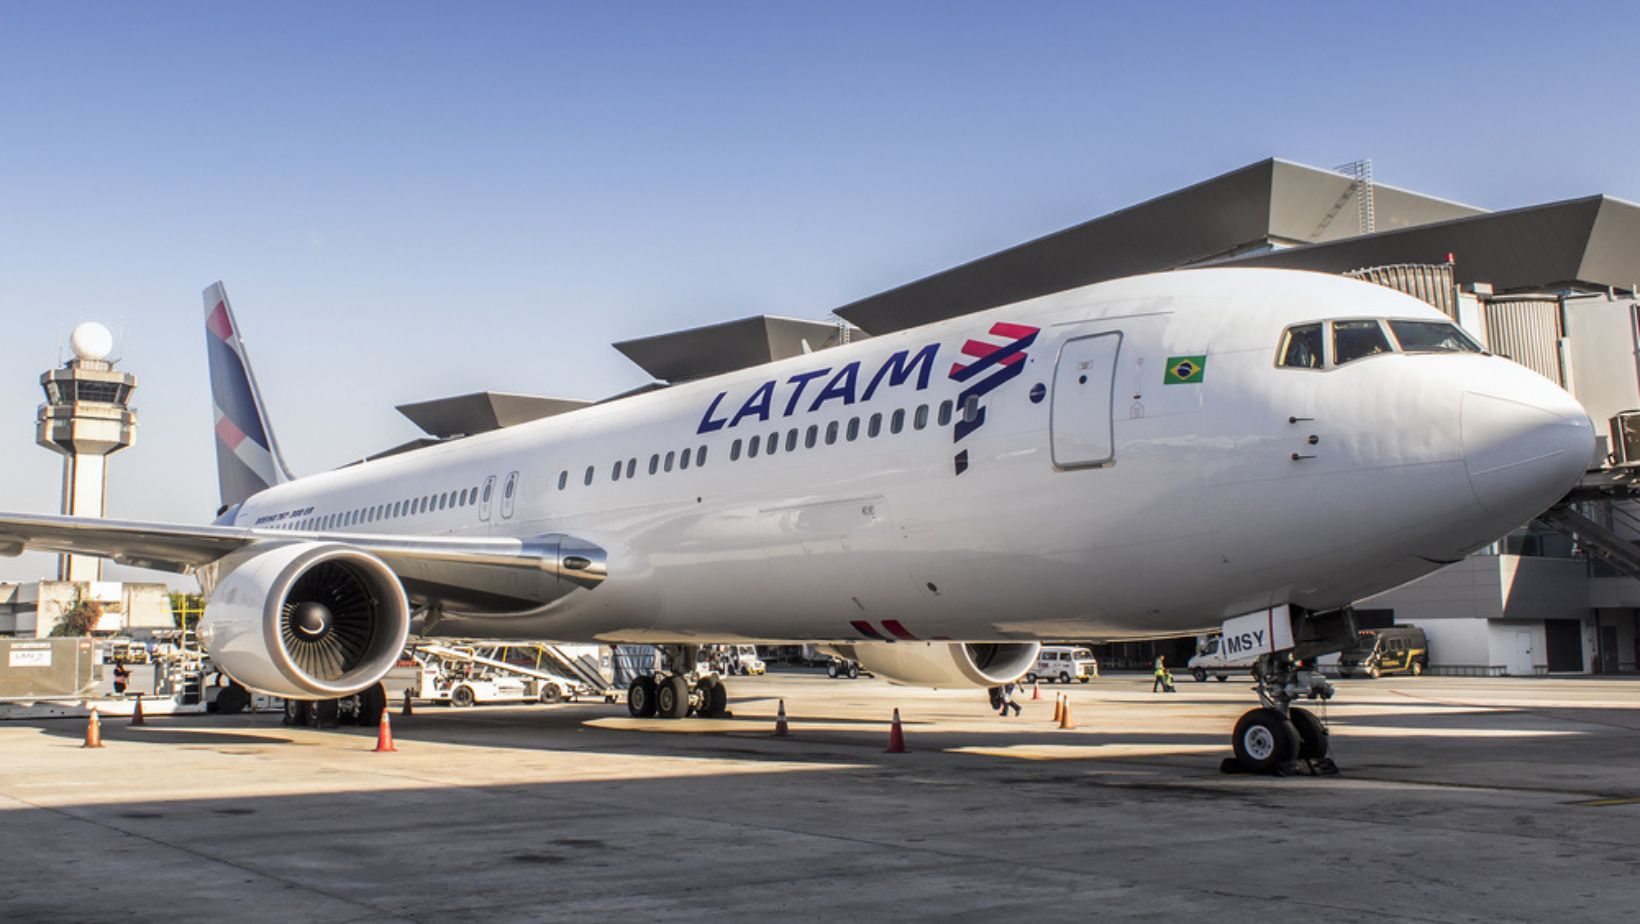 Tiquetes baratos de Latam en Colombia: hay vuelos que van desde los $ 66.000